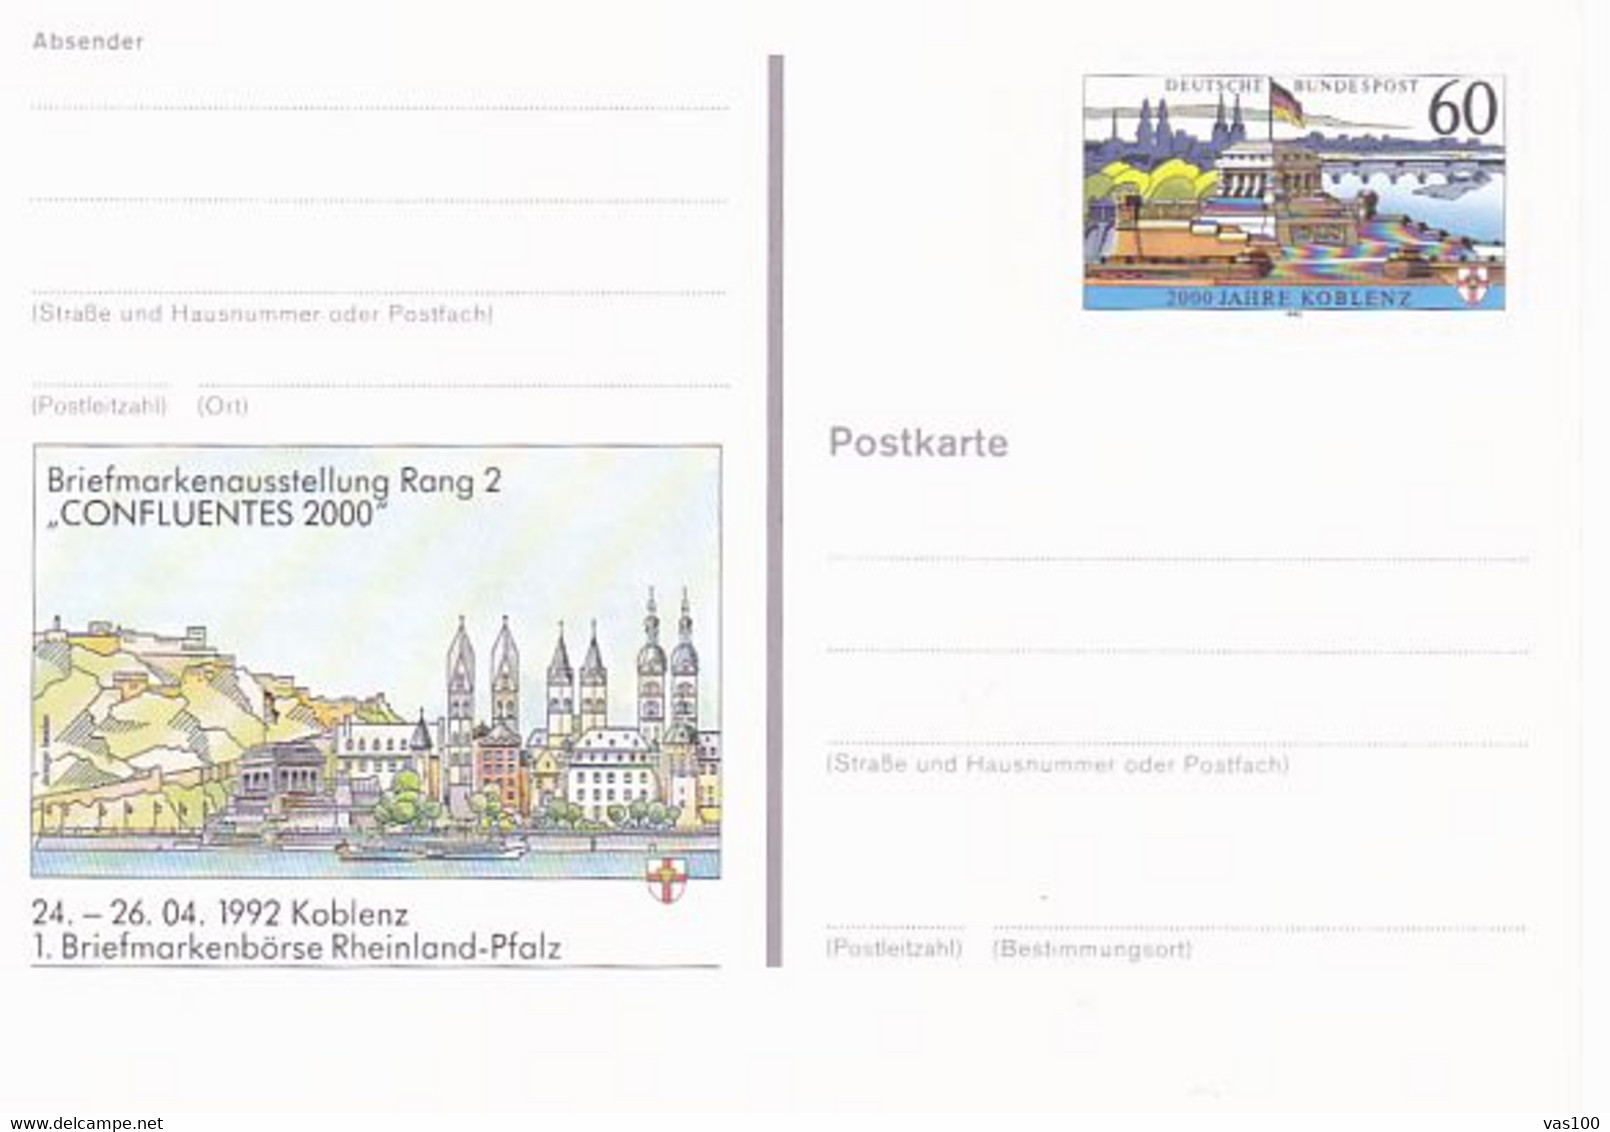 KOBLENZ PHILATELIC EXHIBITION, MONUMENT, PC STATIONERY, ENTIER POSTAL, 1992, GERMANY - Postkarten - Ungebraucht